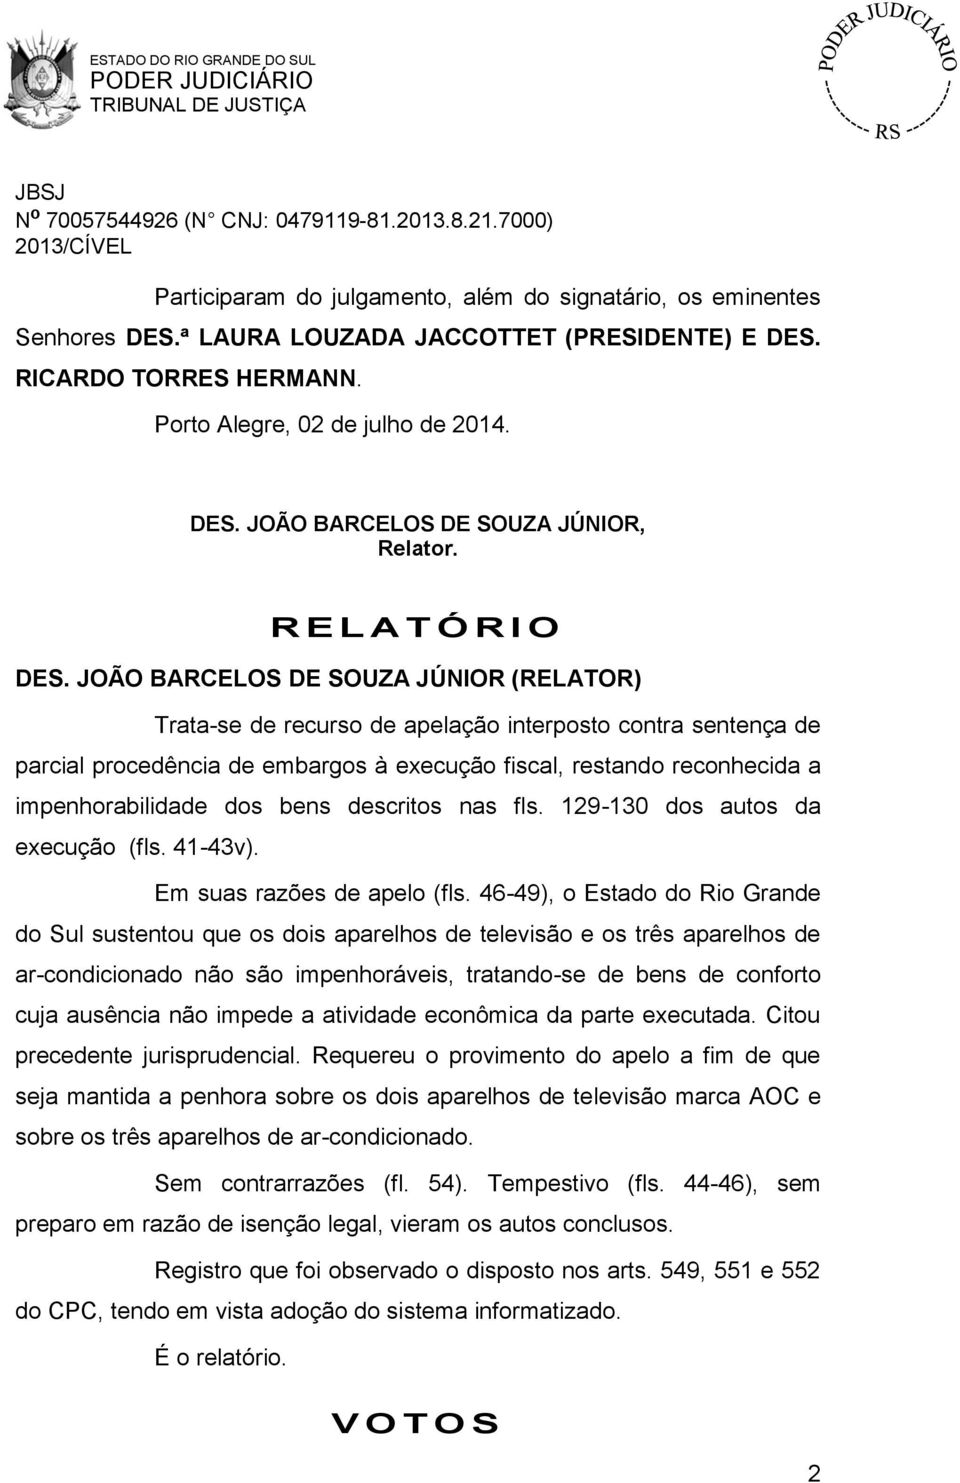 JOÃO BARCELOS DE SOUZA JÚNIOR (RELATOR) Trata-se de recurso de apelação interposto contra sentença de parcial procedência de embargos à execução fiscal, restando reconhecida a impenhorabilidade dos